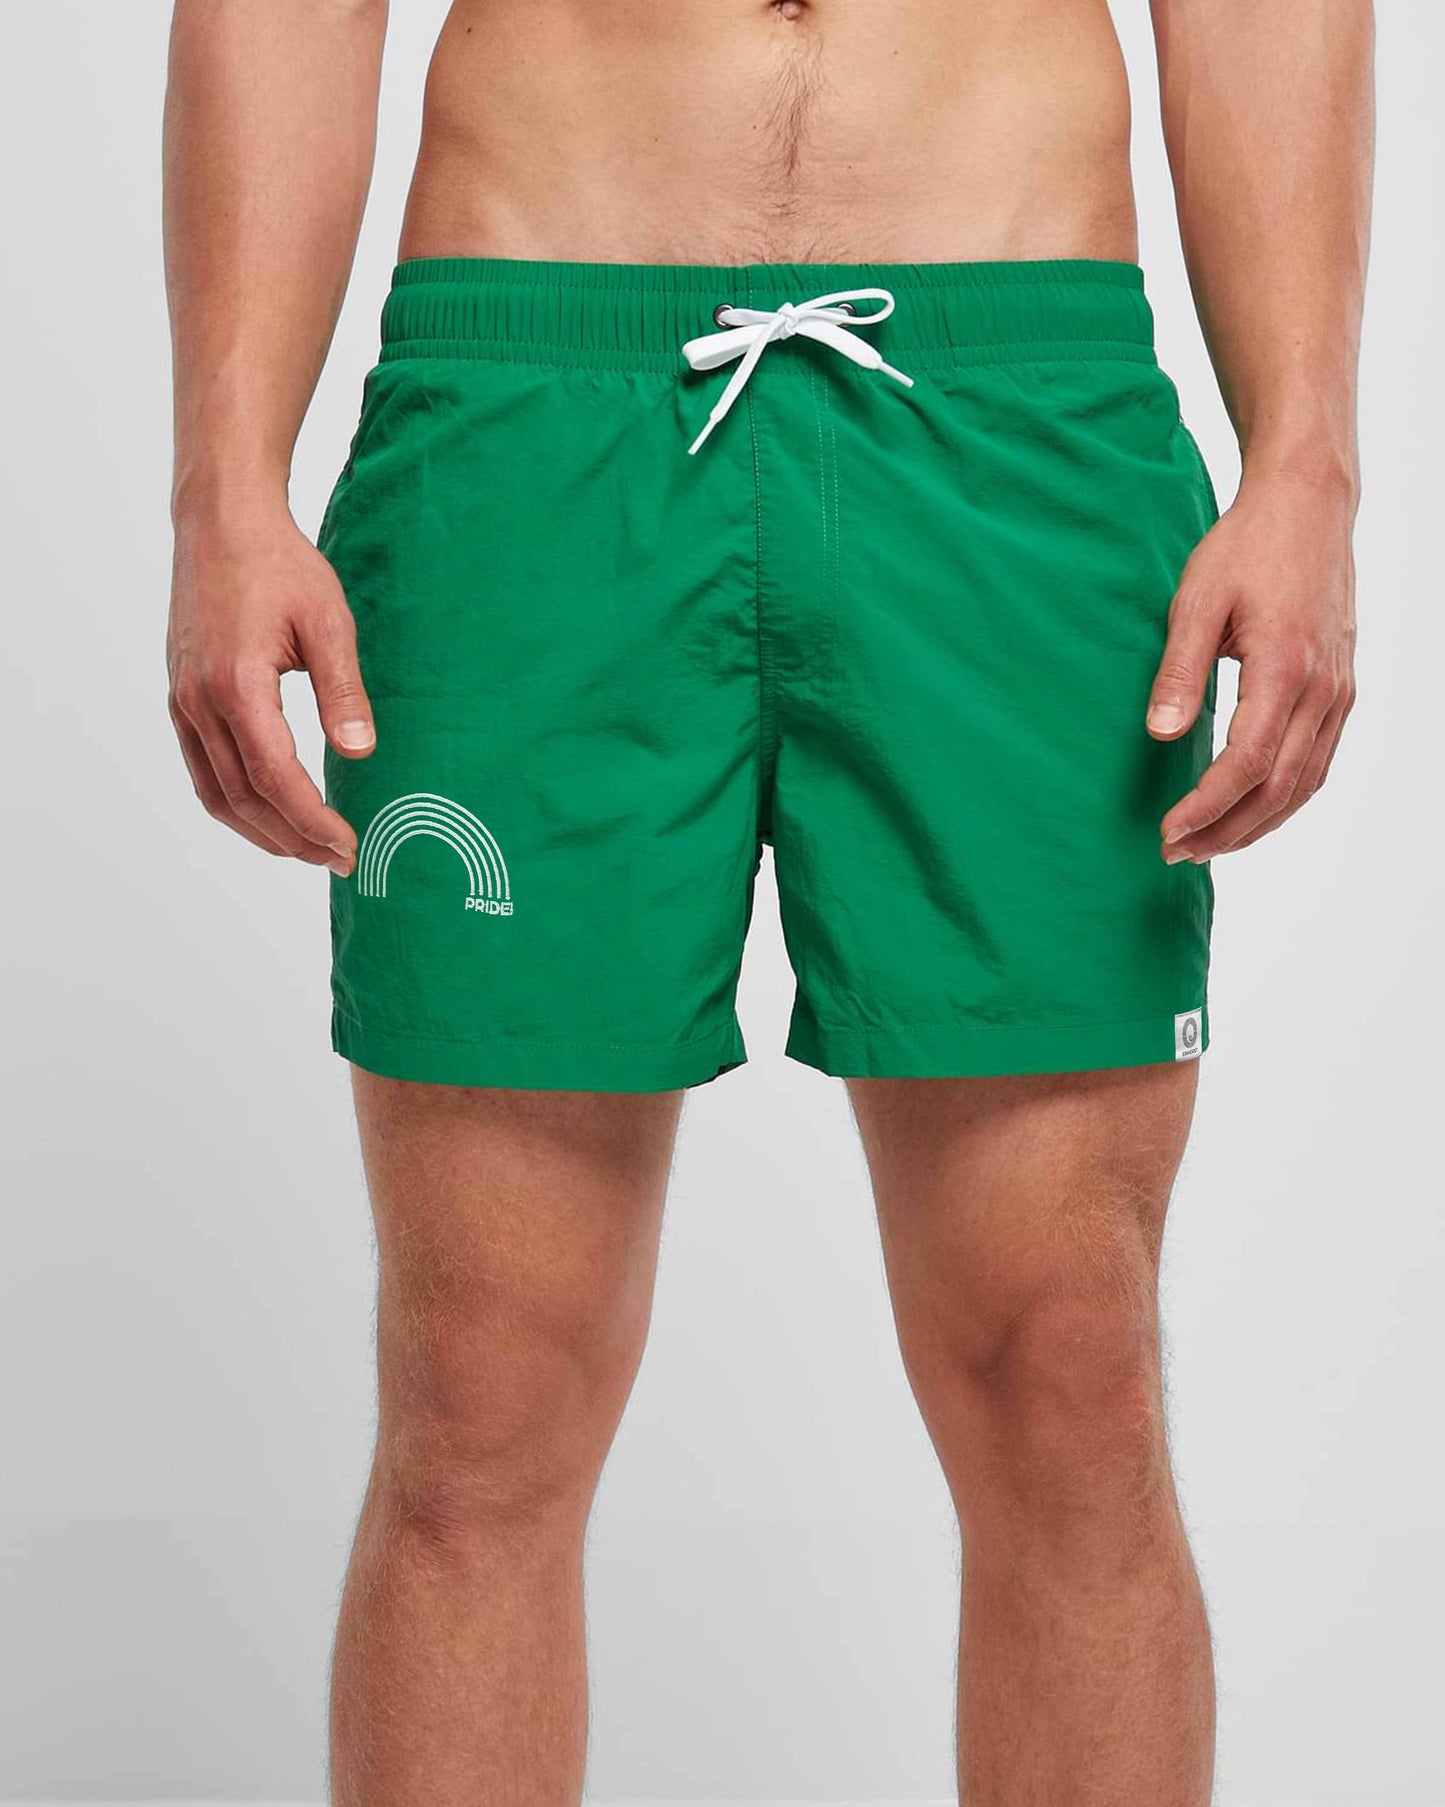 EINHORST® Schwimm- & Sportshorts mit dem Motiv "pride-Regenbogen" in der Farbe "Forestgreen", Bild von einer männlichen Person von vorne, die die Shorts trägt